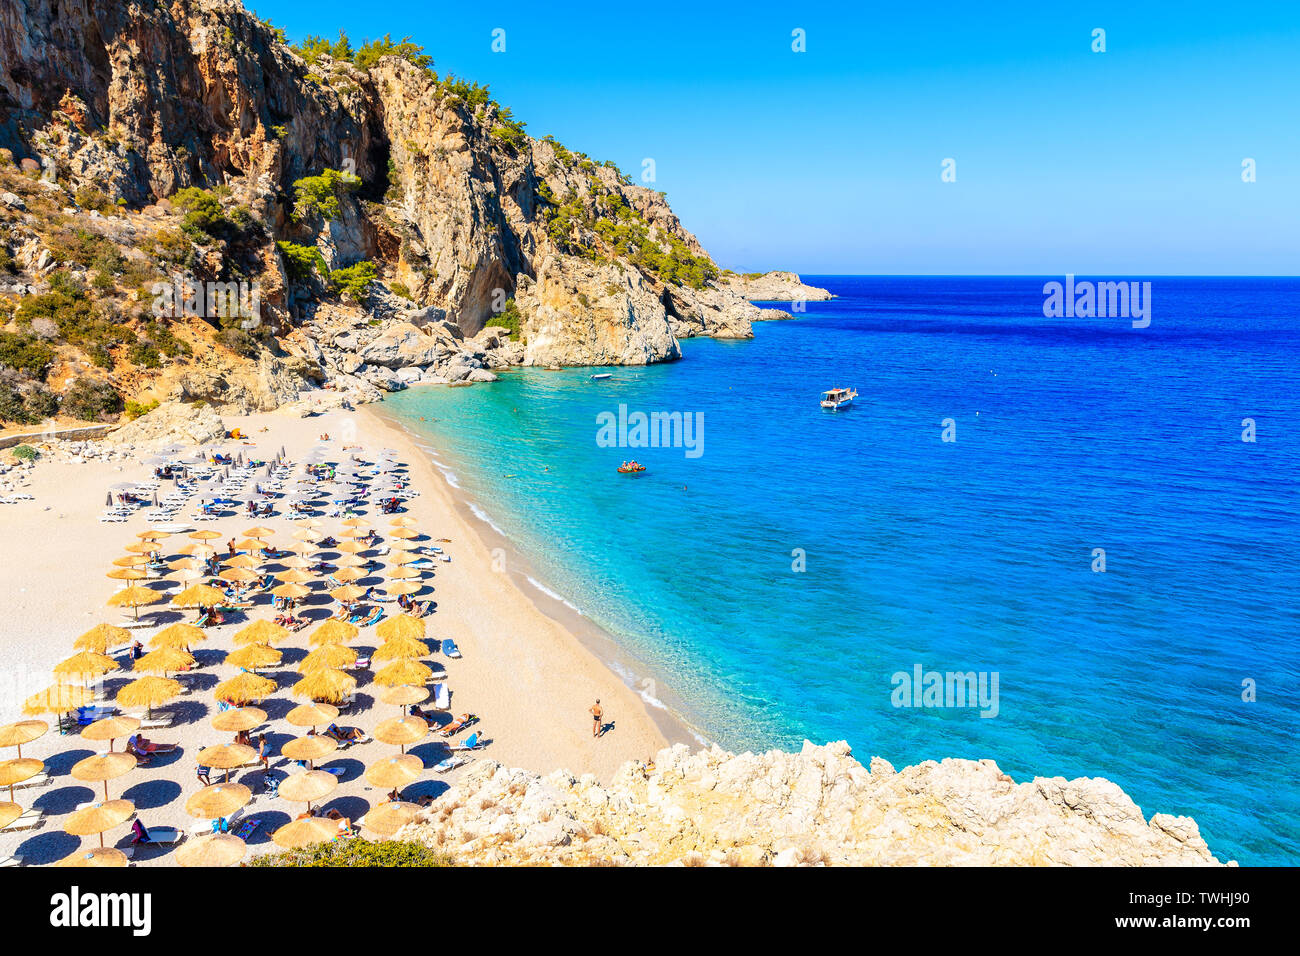 View of Kyra Pynagia beach, Karpathos island, Greece Stock Photo